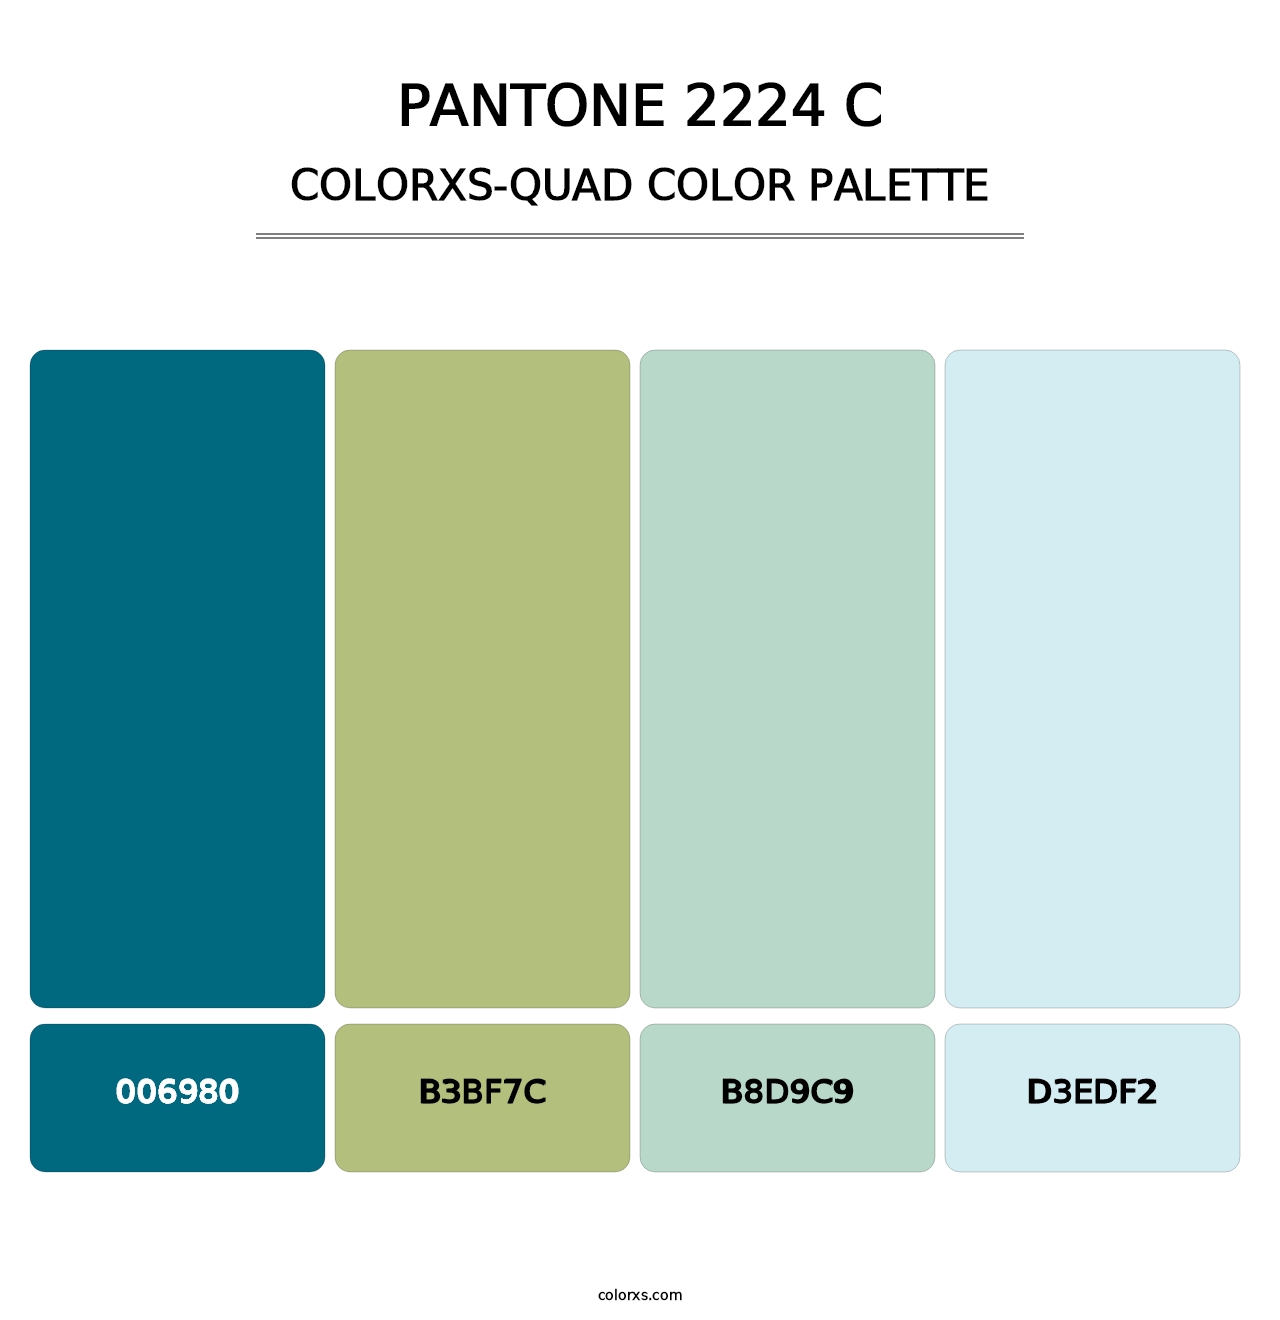 PANTONE 2224 C - Colorxs Quad Palette